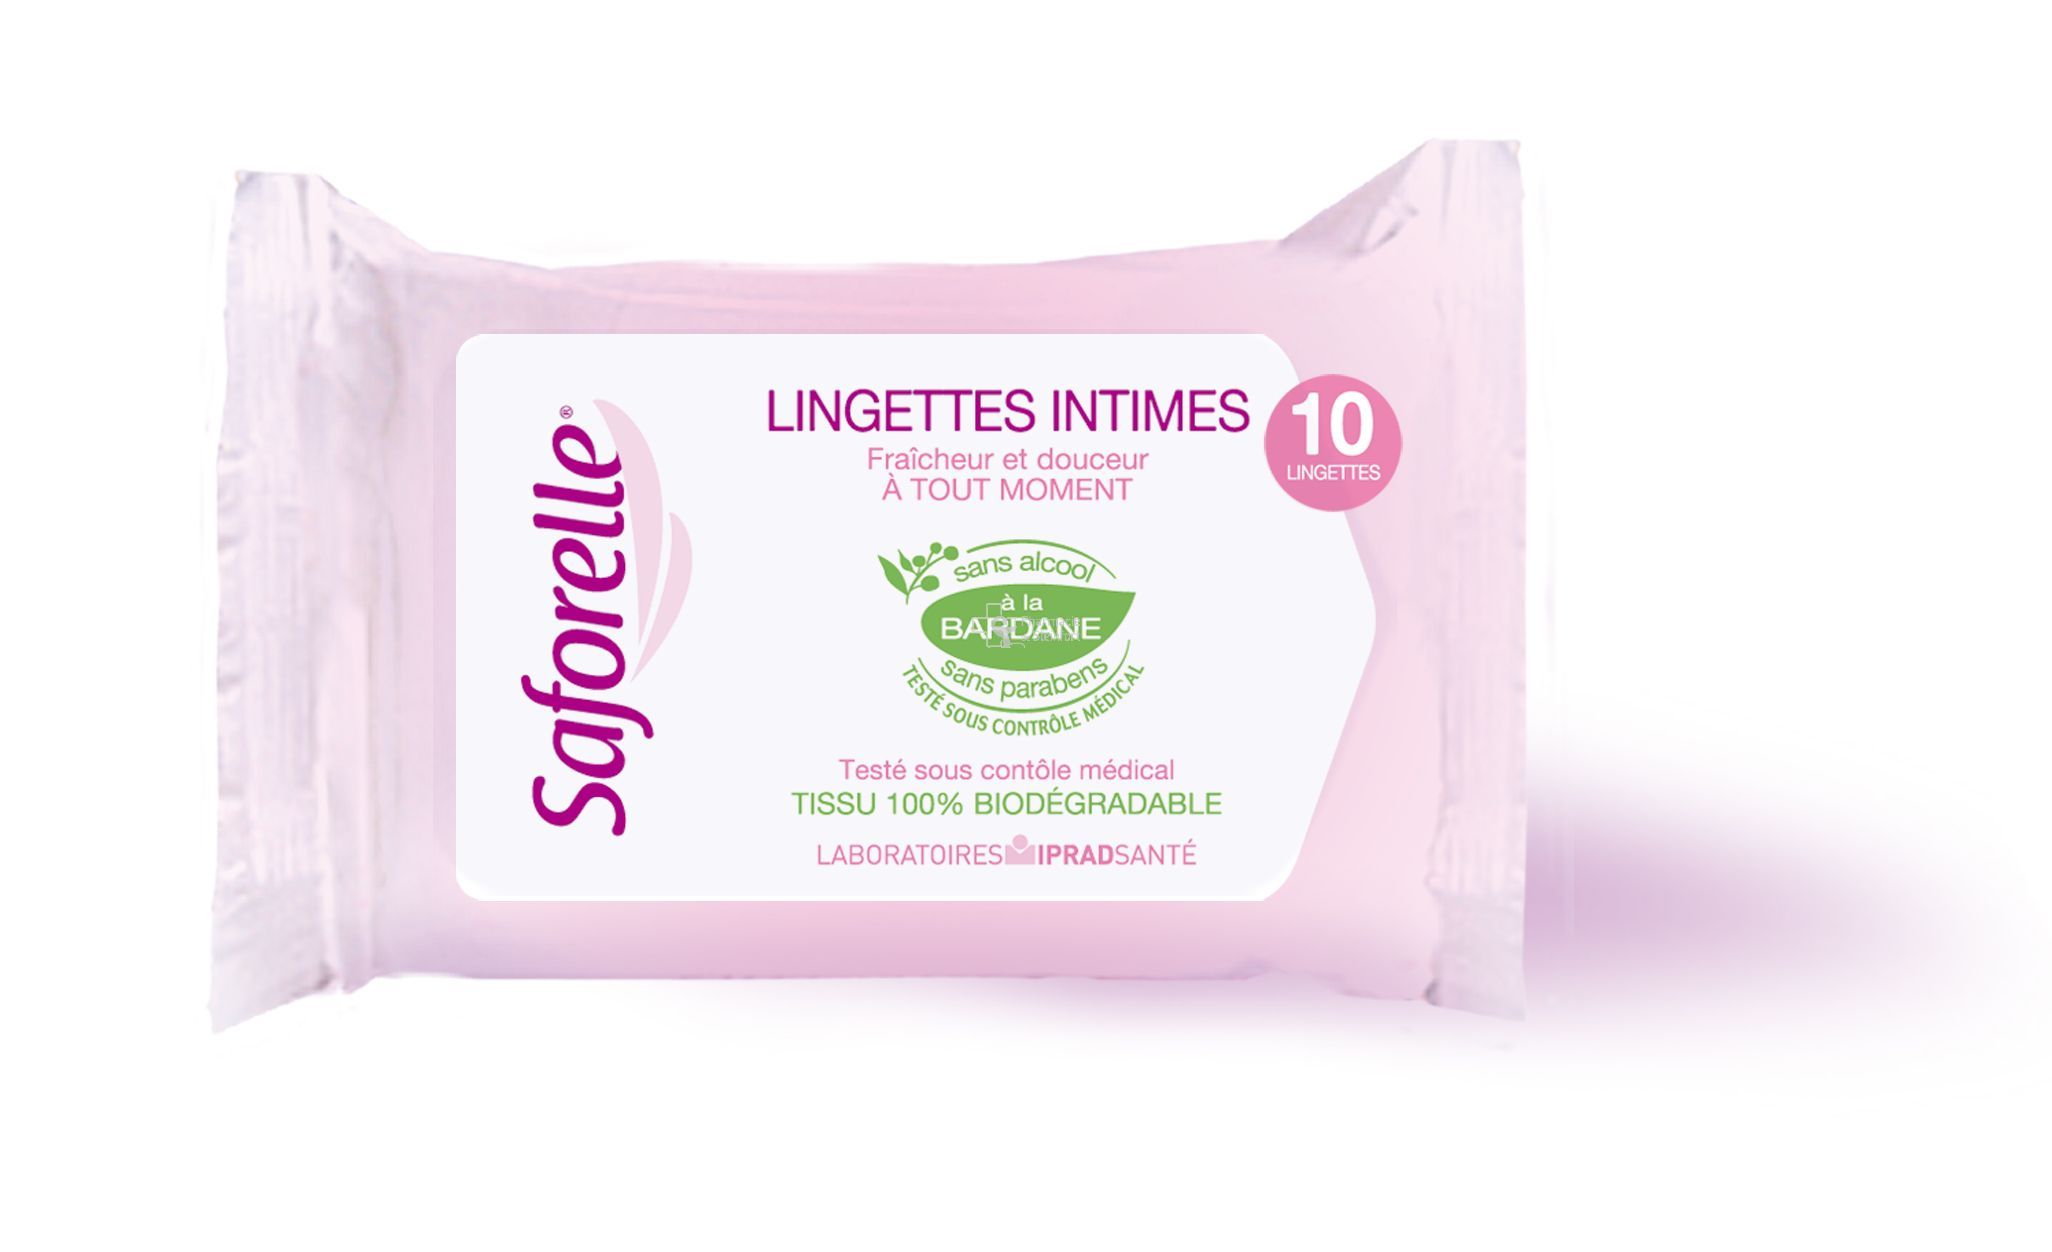 SAFORELLE LINGETTES INTIMES SACHET POCKET DE 10 LINGETTES